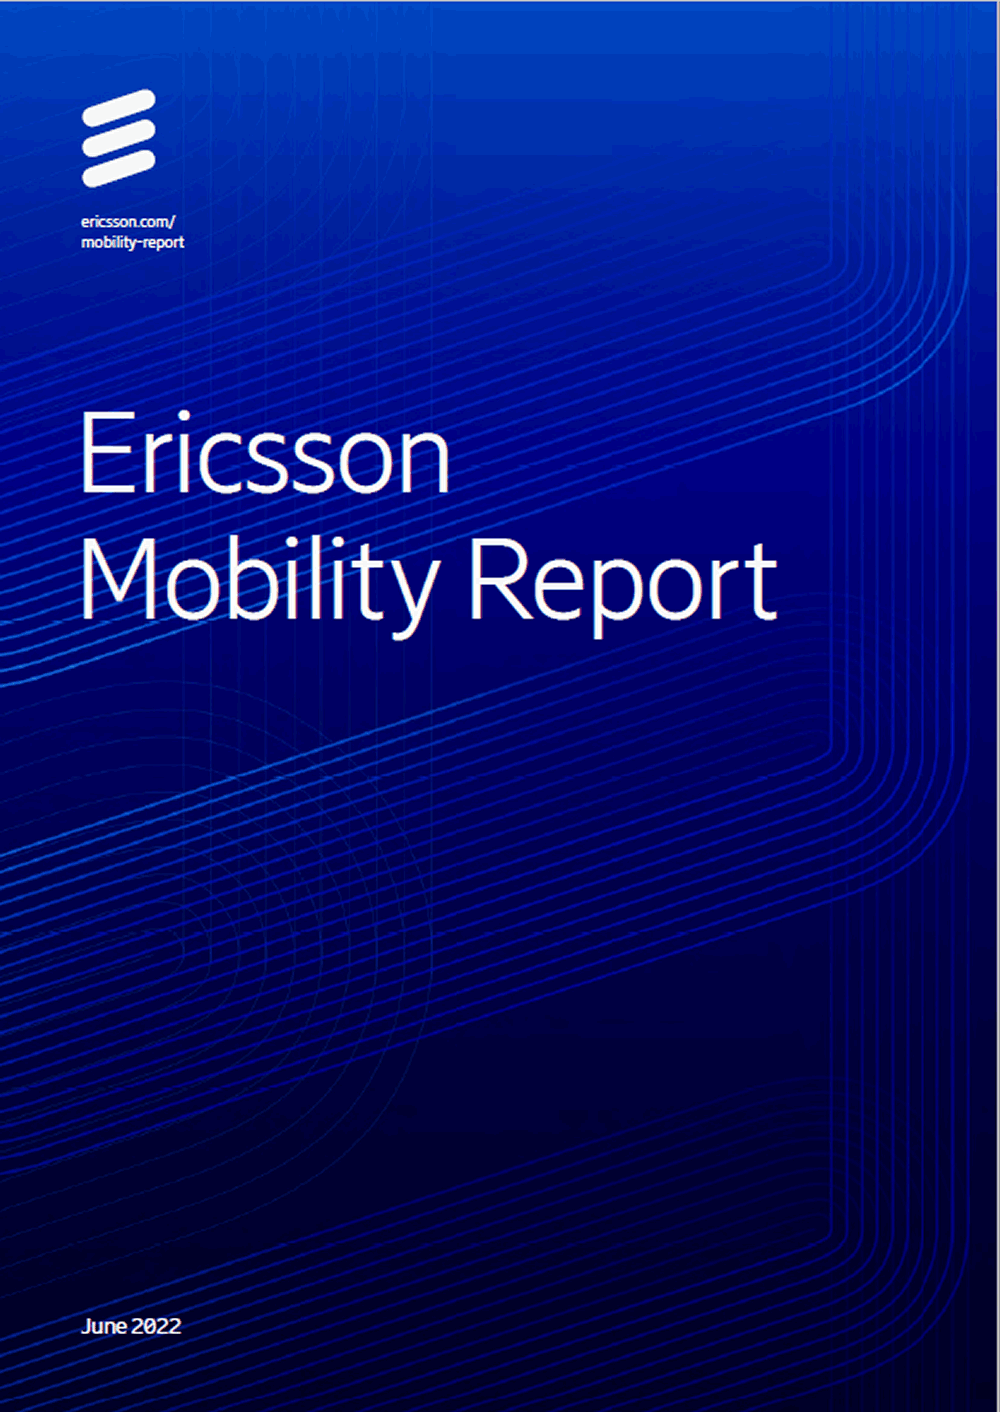 Excelente reporte de Movilidad de Ericsson fechado en junio 2022